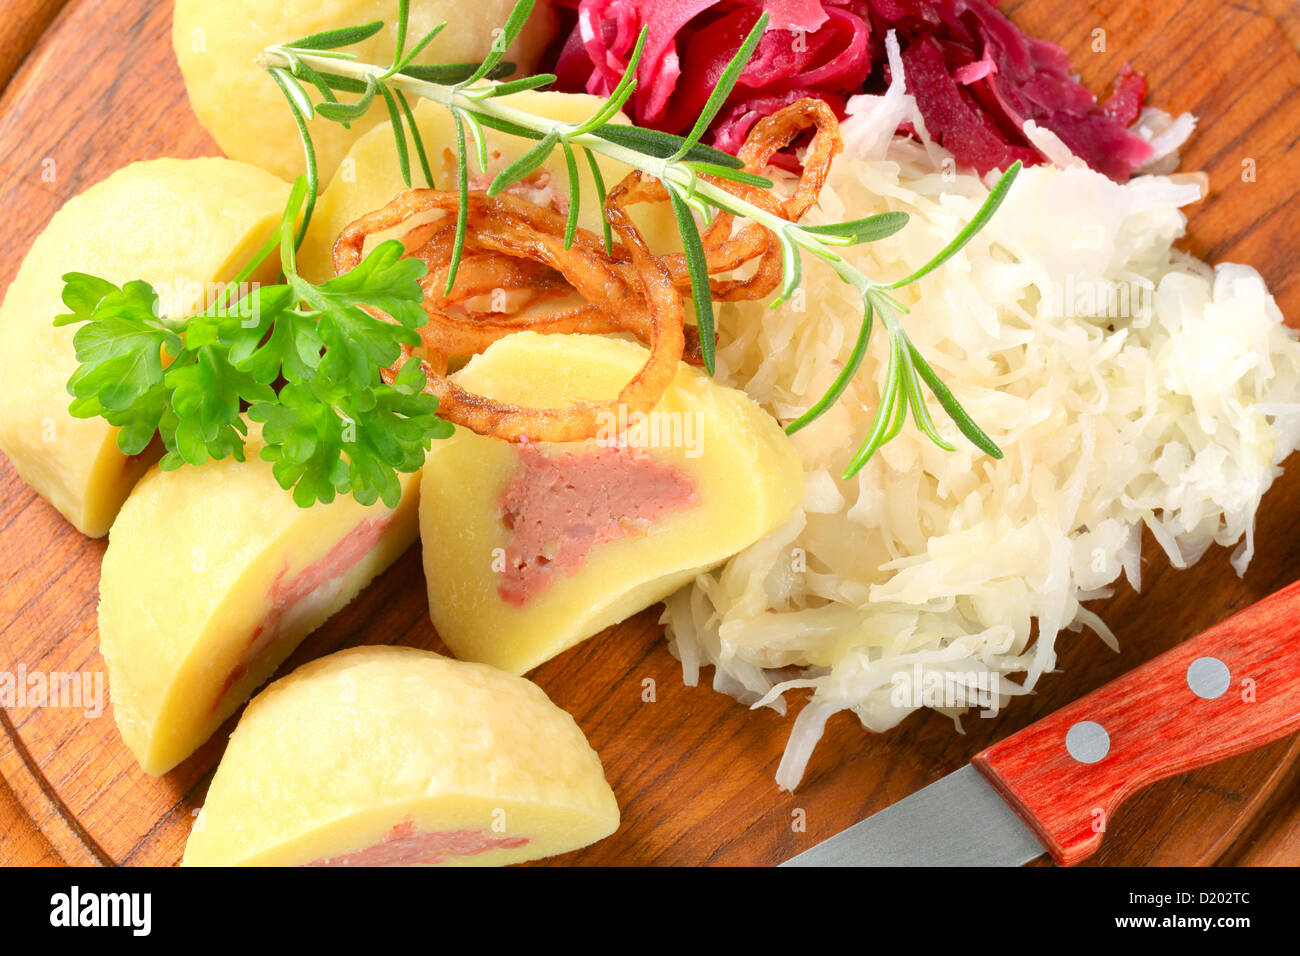 Boulettes de pommes de terre farcies de viande avec chou râpé on cutting board Banque D'Images